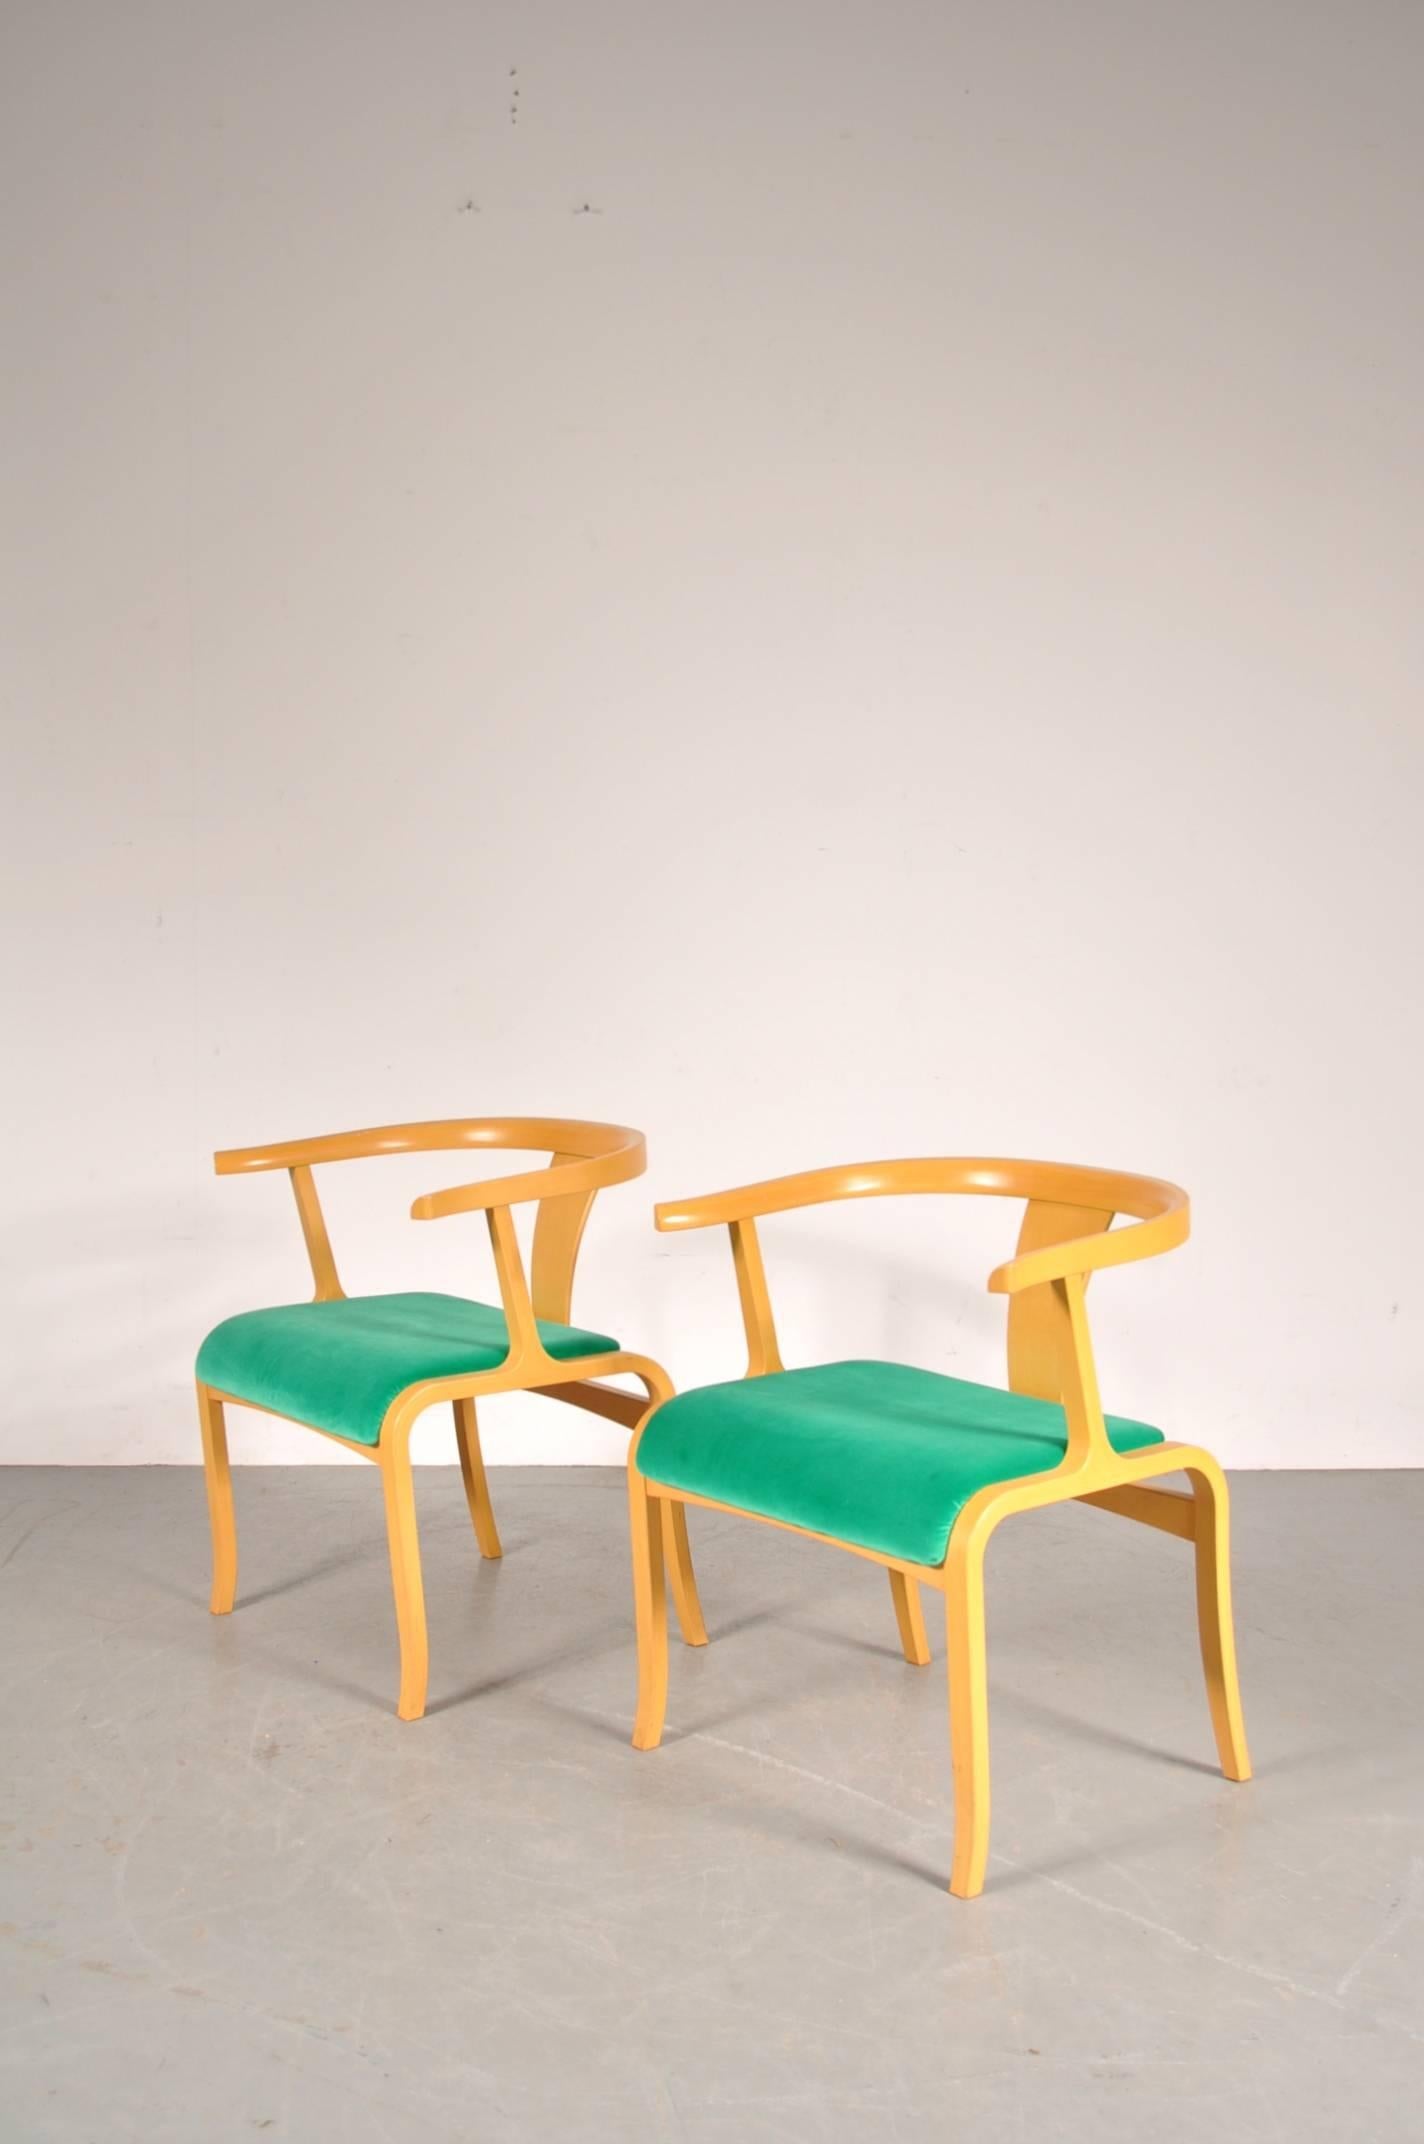 Seltener Schreibtisch oder Beistellstuhl, zugeschrieben Toshiyuki Kita, hergestellt von Tendo Mokko in Japan, um 1960.

Diese auffälligen Stühle sind aus hochwertigem Birkensperrholz gefertigt und mit einem neuen grünen Samtbezug versehen, der sie